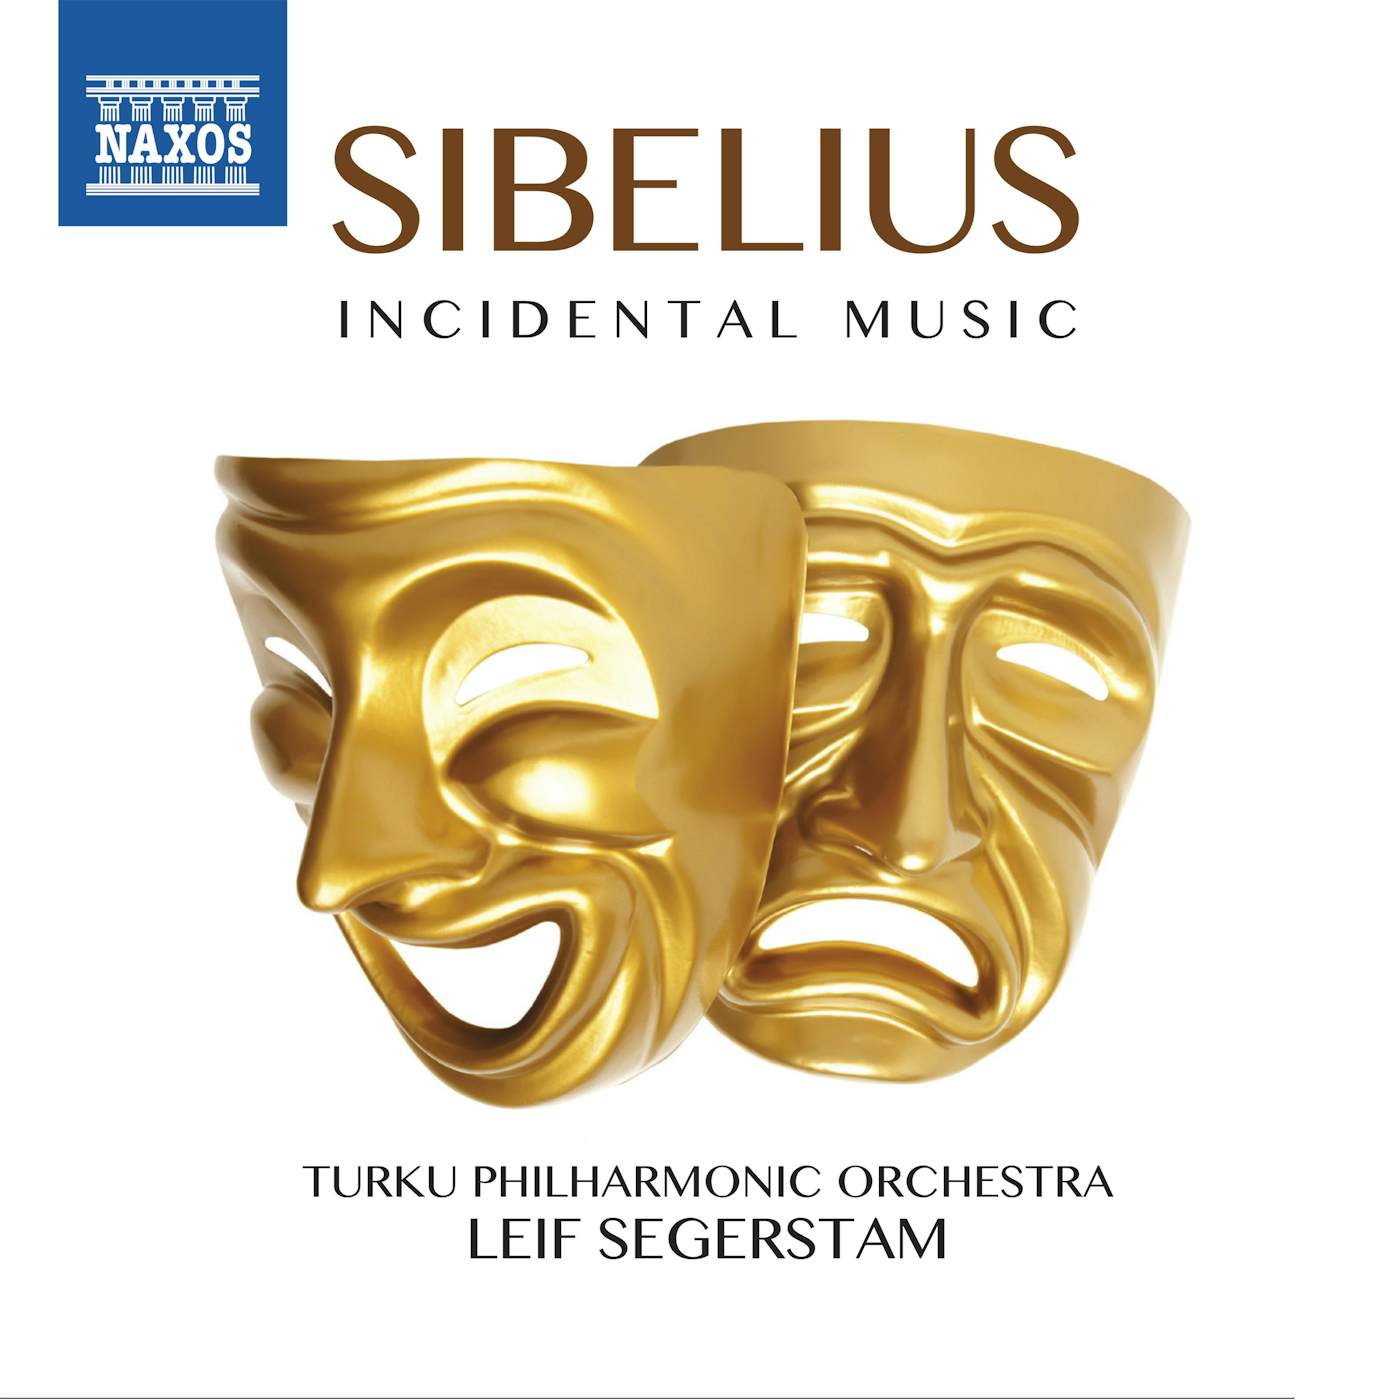 Sibelius INCIDENTAL MUSIC CD